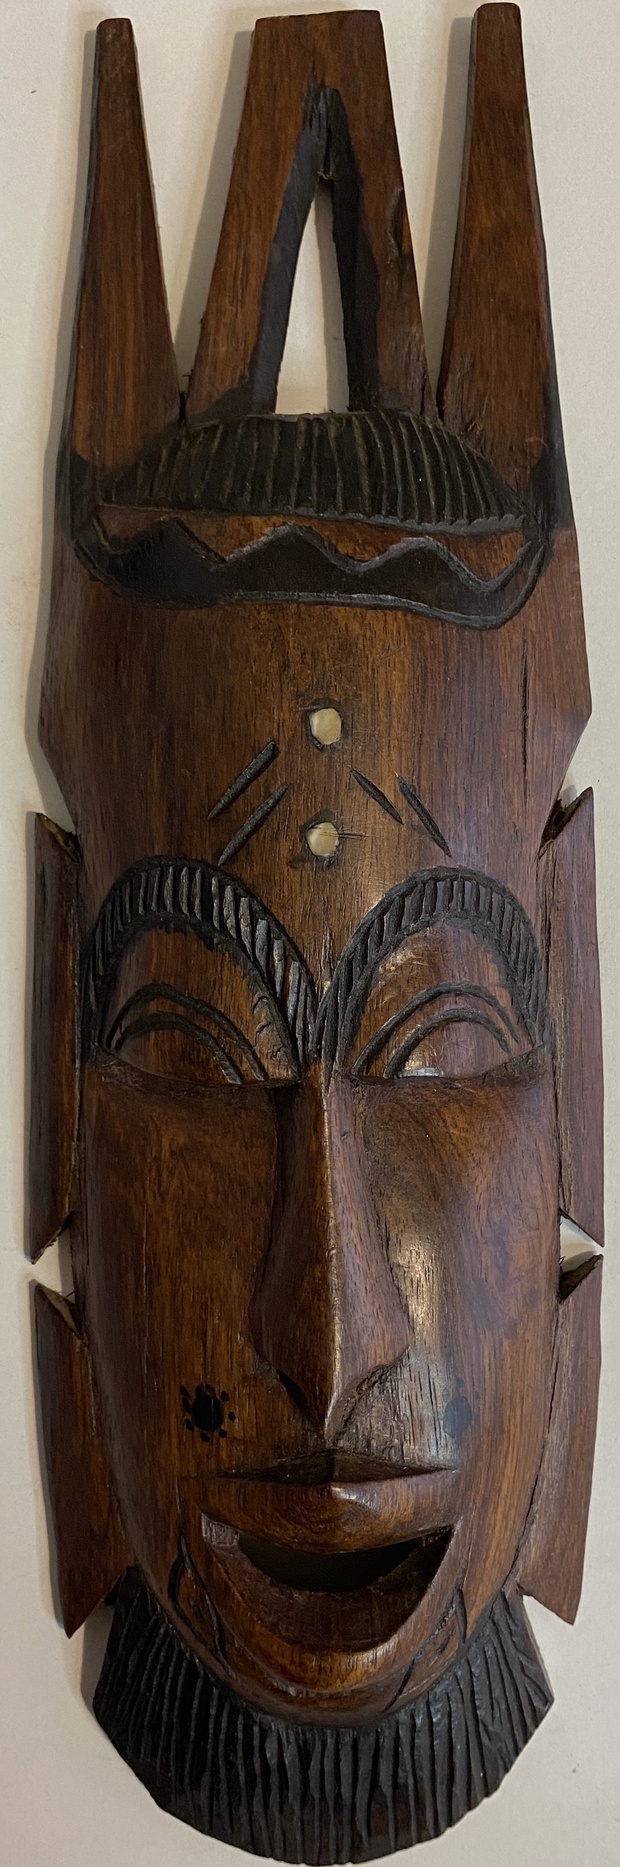 Антикварная резная маска воина красное дерево Африка Камерун середина 20 века кость